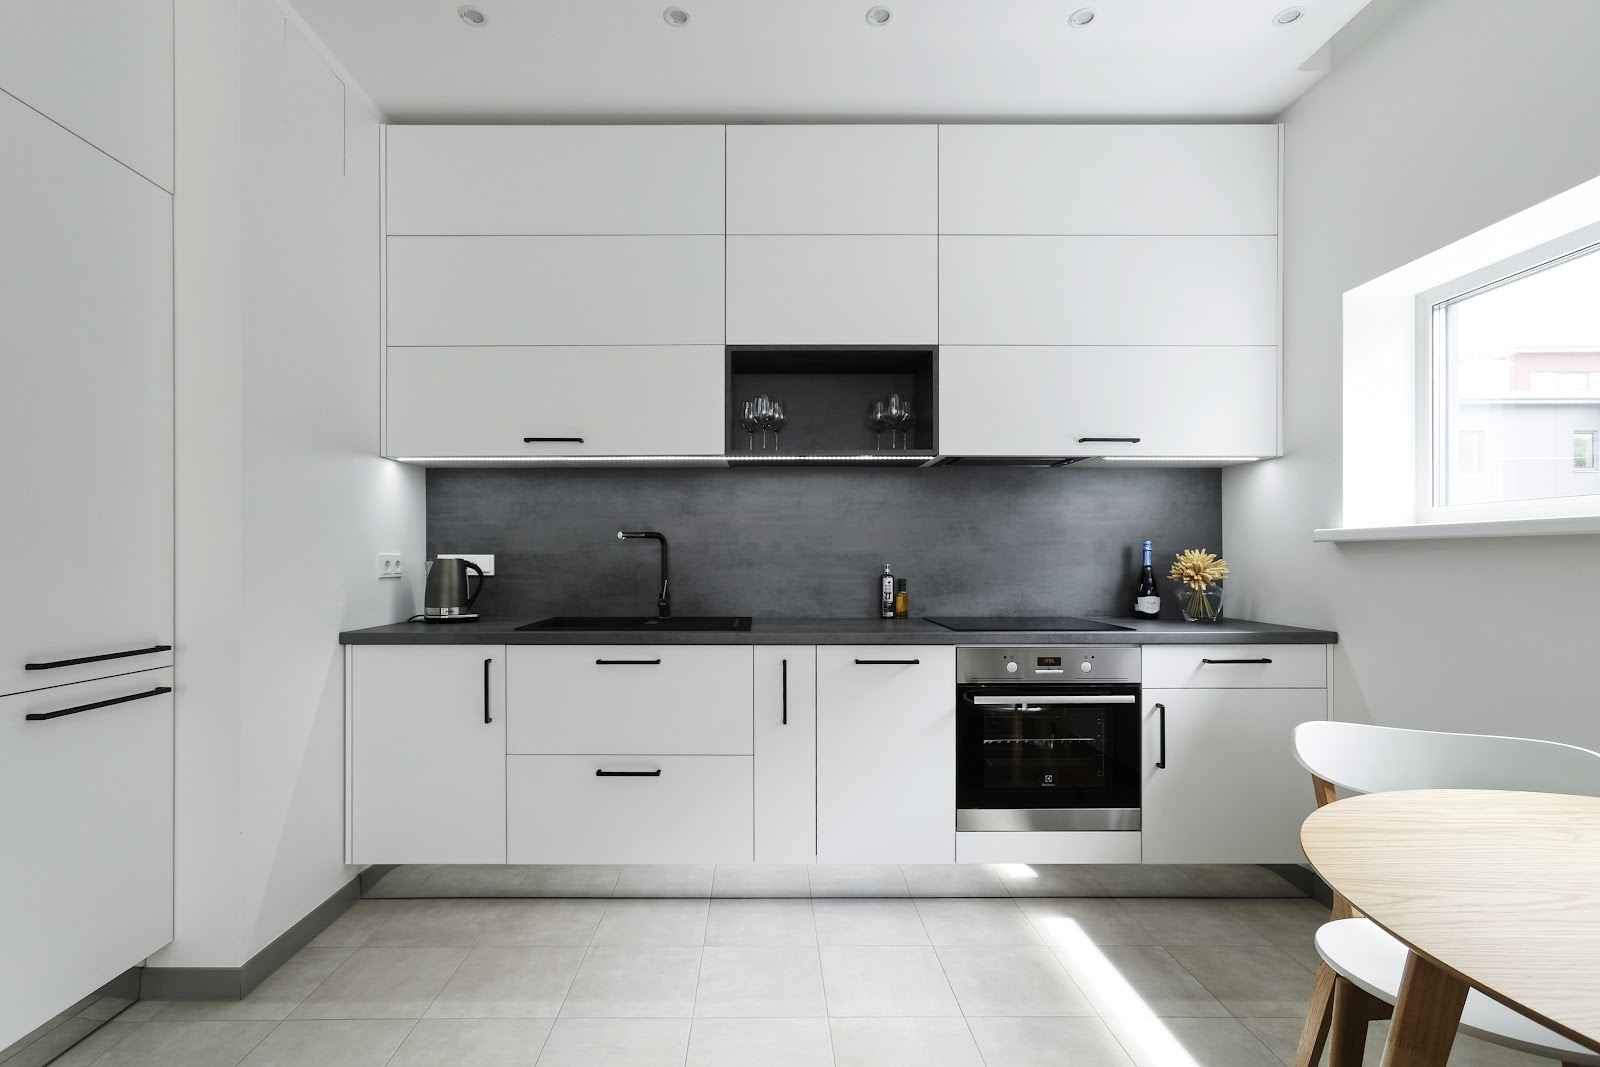 Фотография белой кухни из статьи - Как подобрать дизайн кухни и интерьер дома?